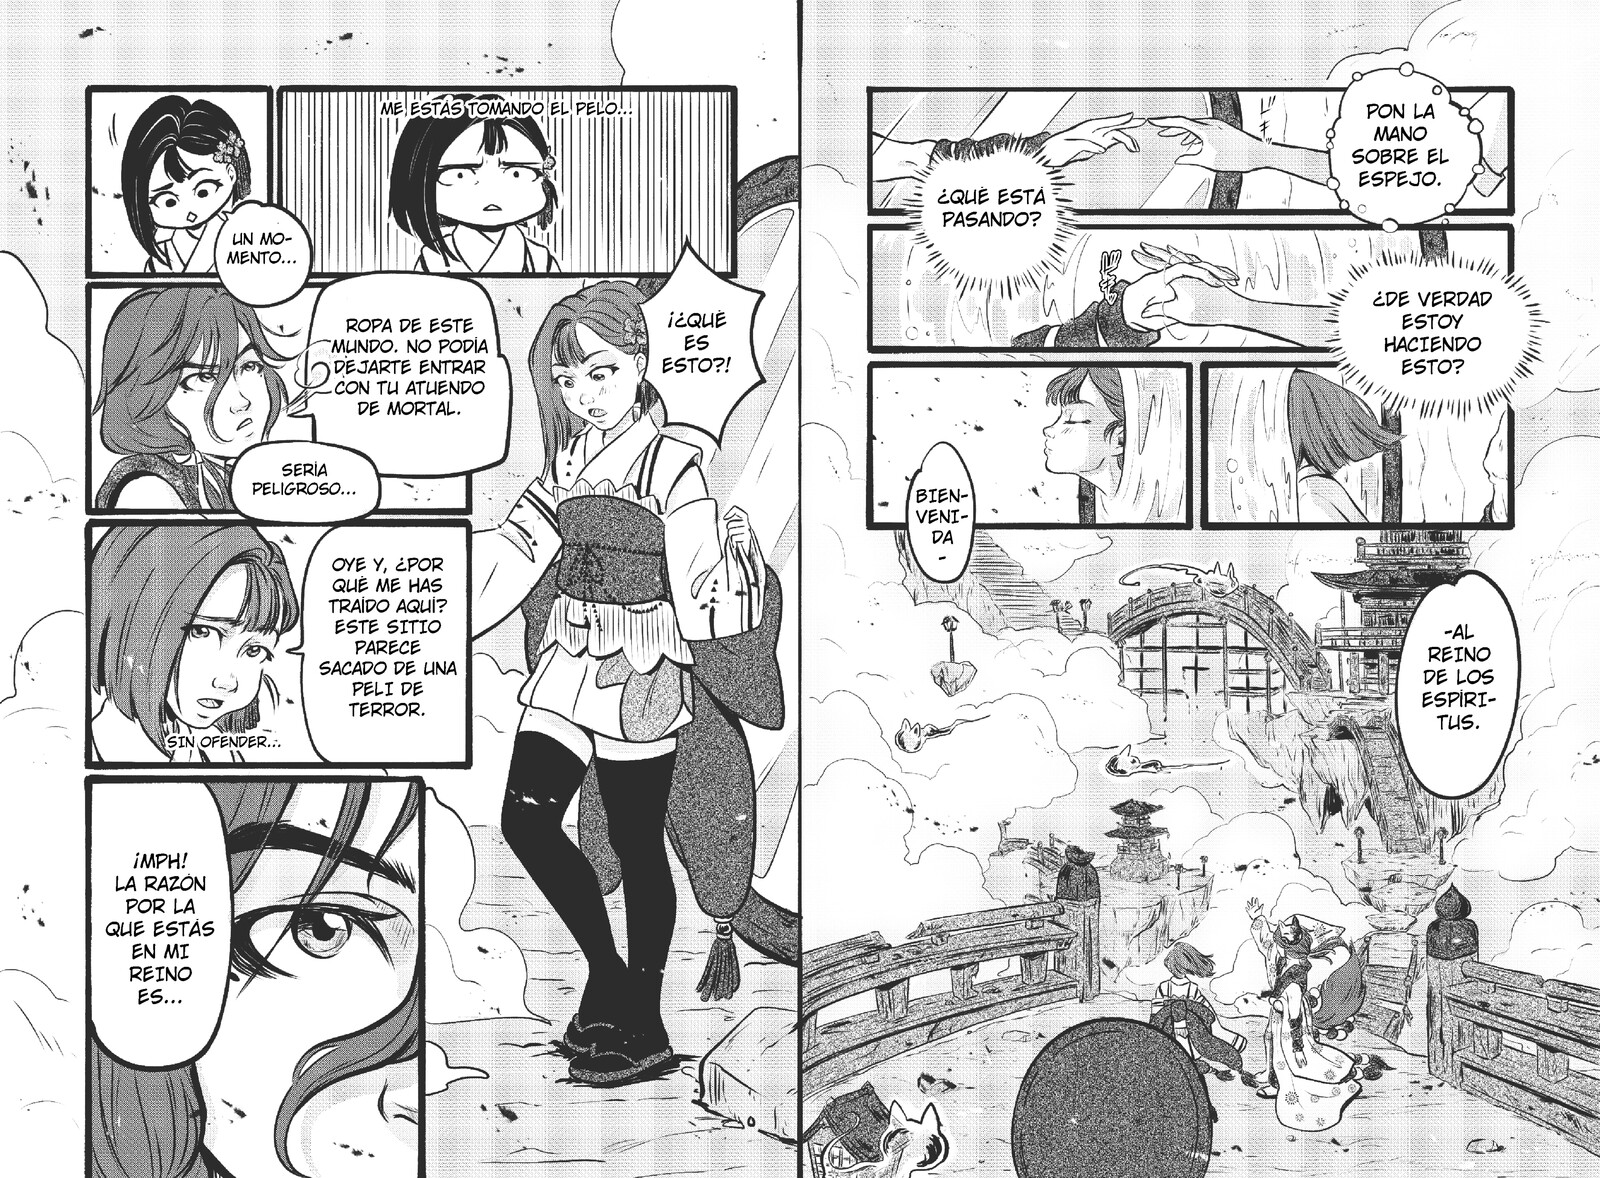 Pages for manga story "Kioka. La profecía al otro lado del espejo" part 1.